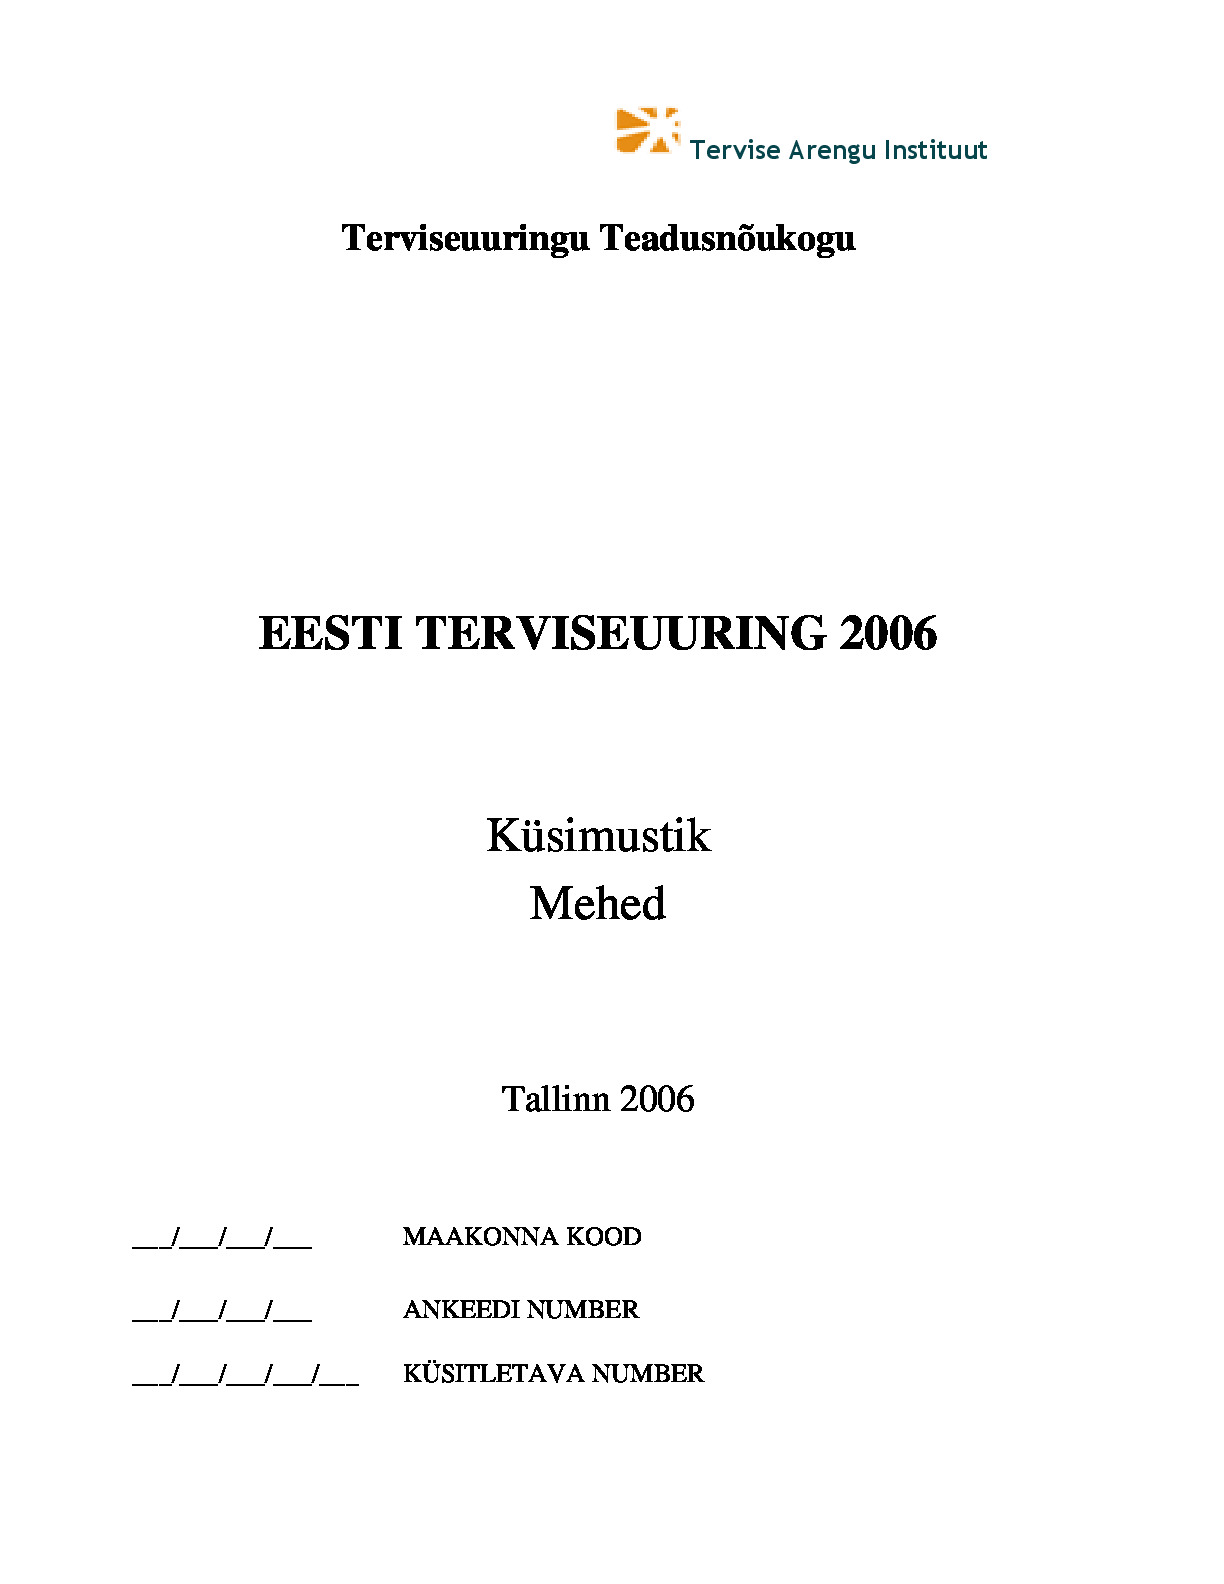 Eesti Terviseuuring 2006 meeste ankeet